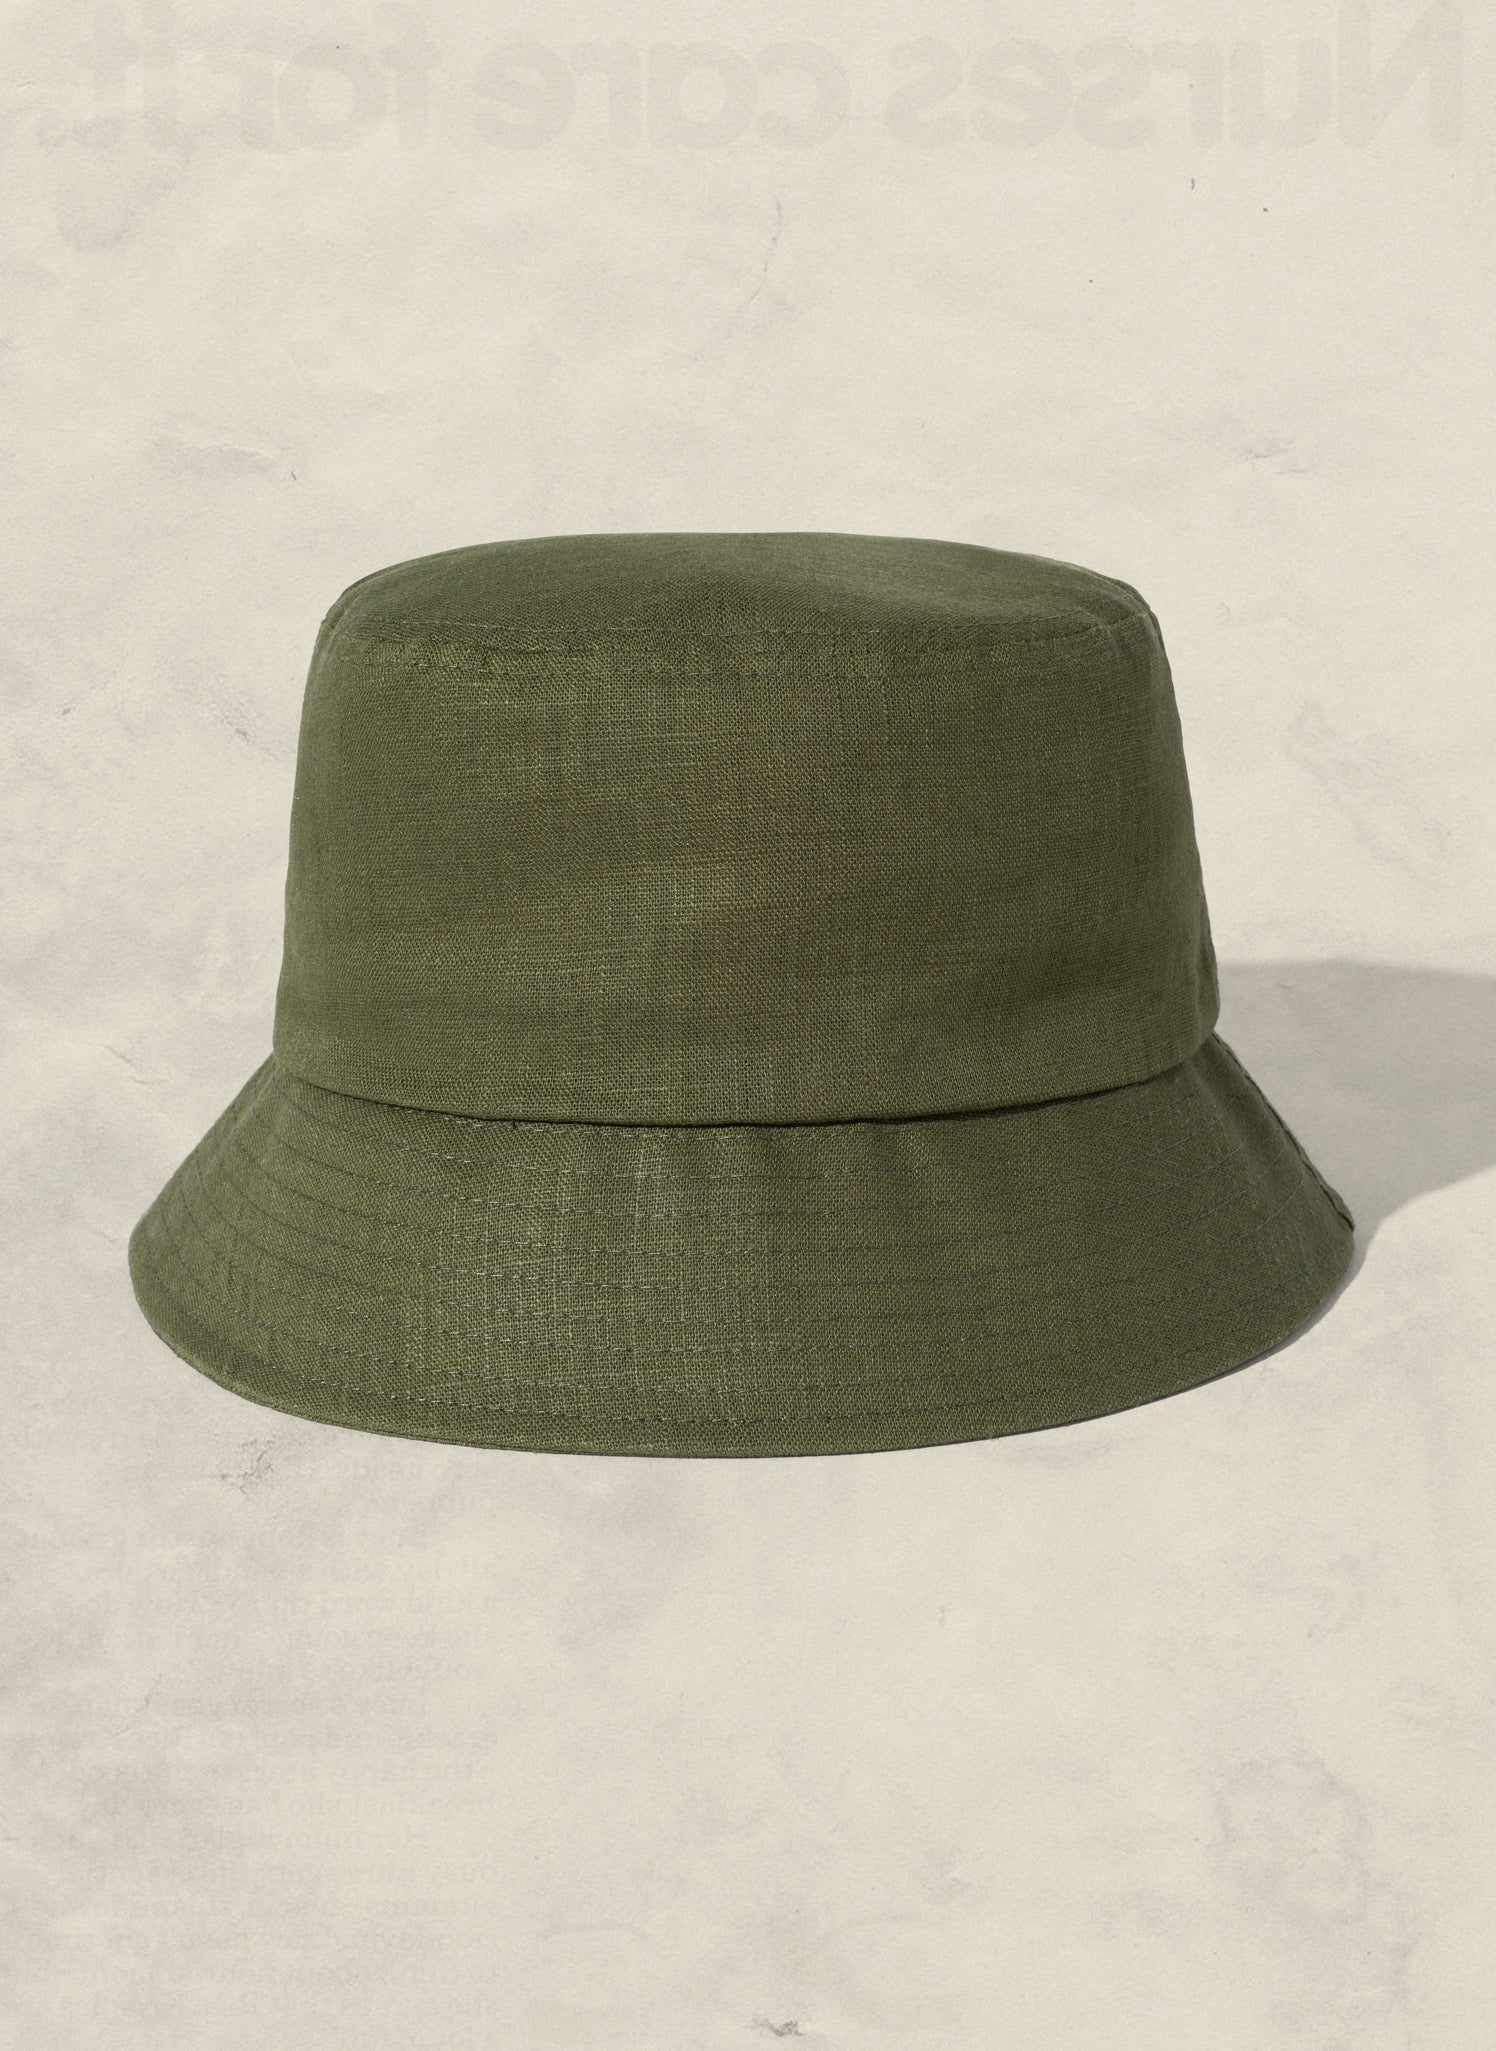 Weld Mfg Hemp Bucket Hat - Vintage Inspired Beach Sun Hat - Olive Green